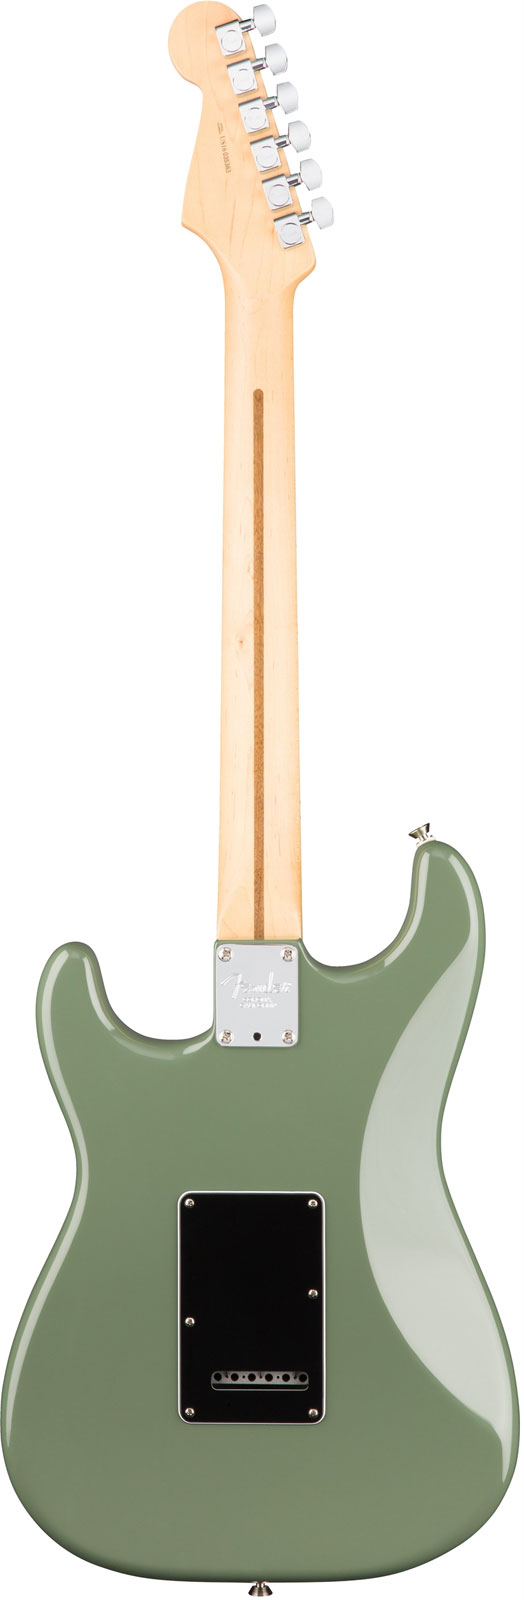 Fender Strat American Professional 2017 3s Usa Mn - Antique Olive - Guitare Électrique Forme Str - Variation 2